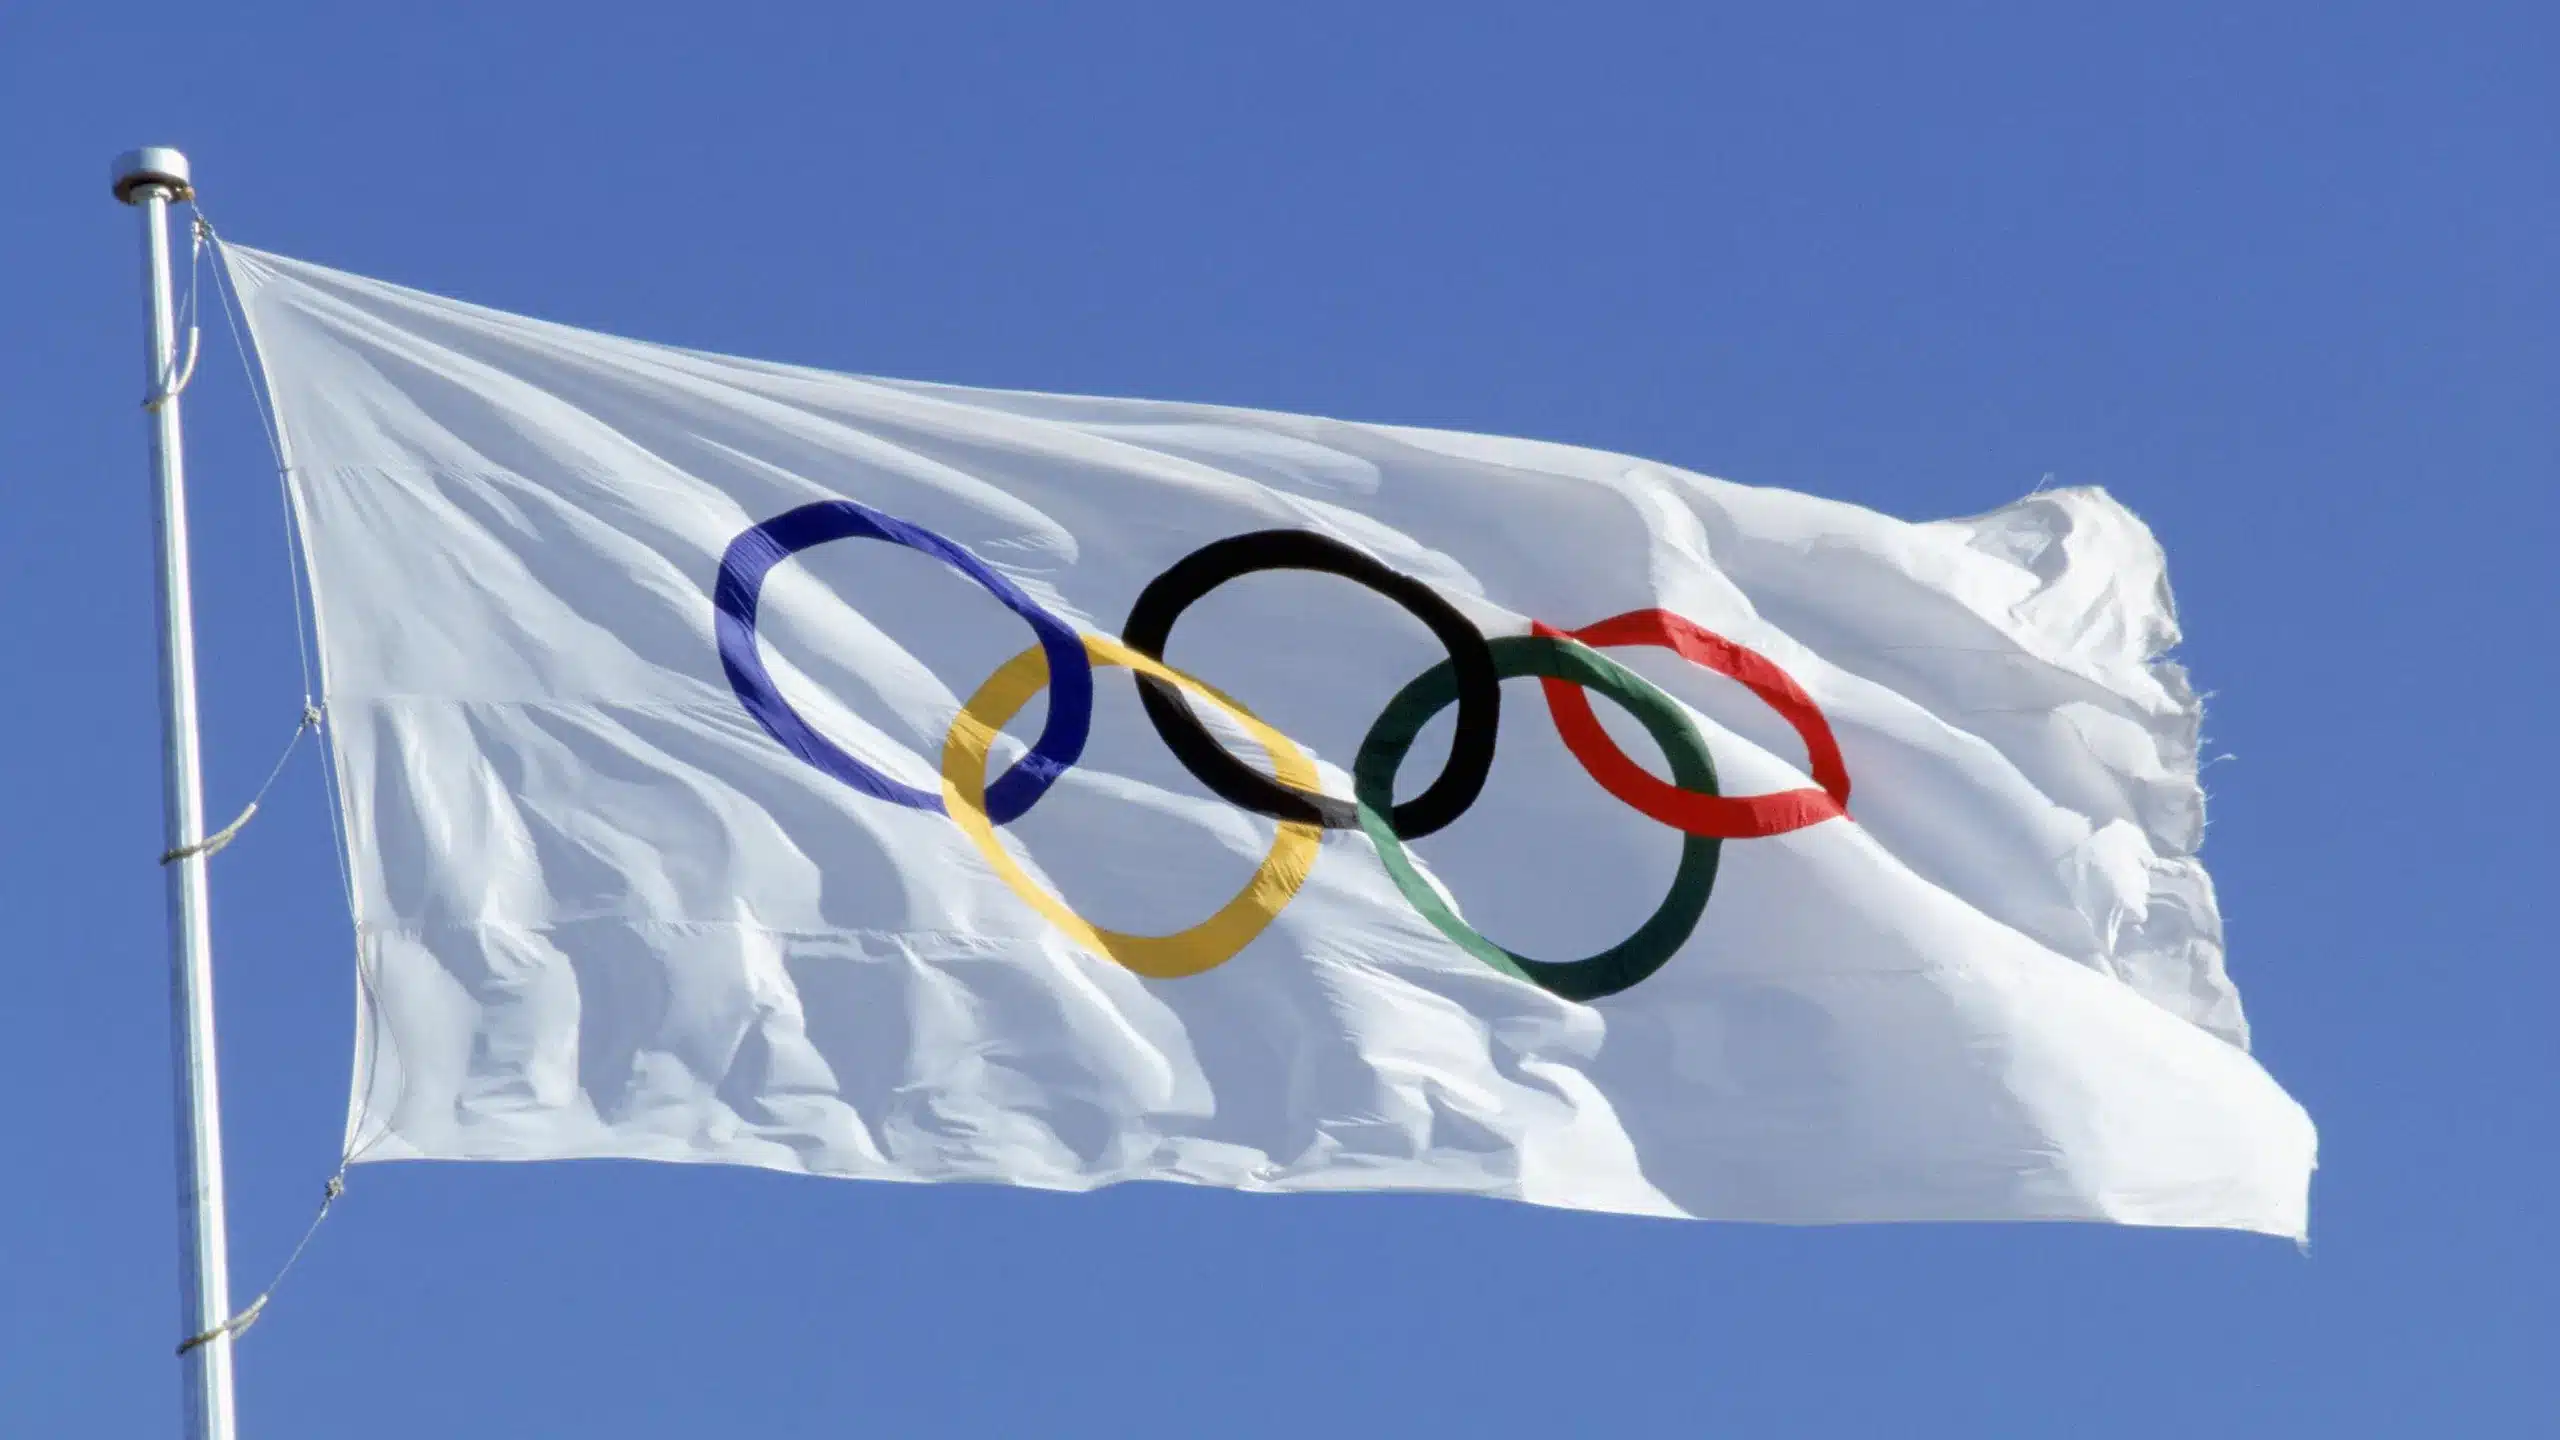 Bandera de los Juegos Olímpicos